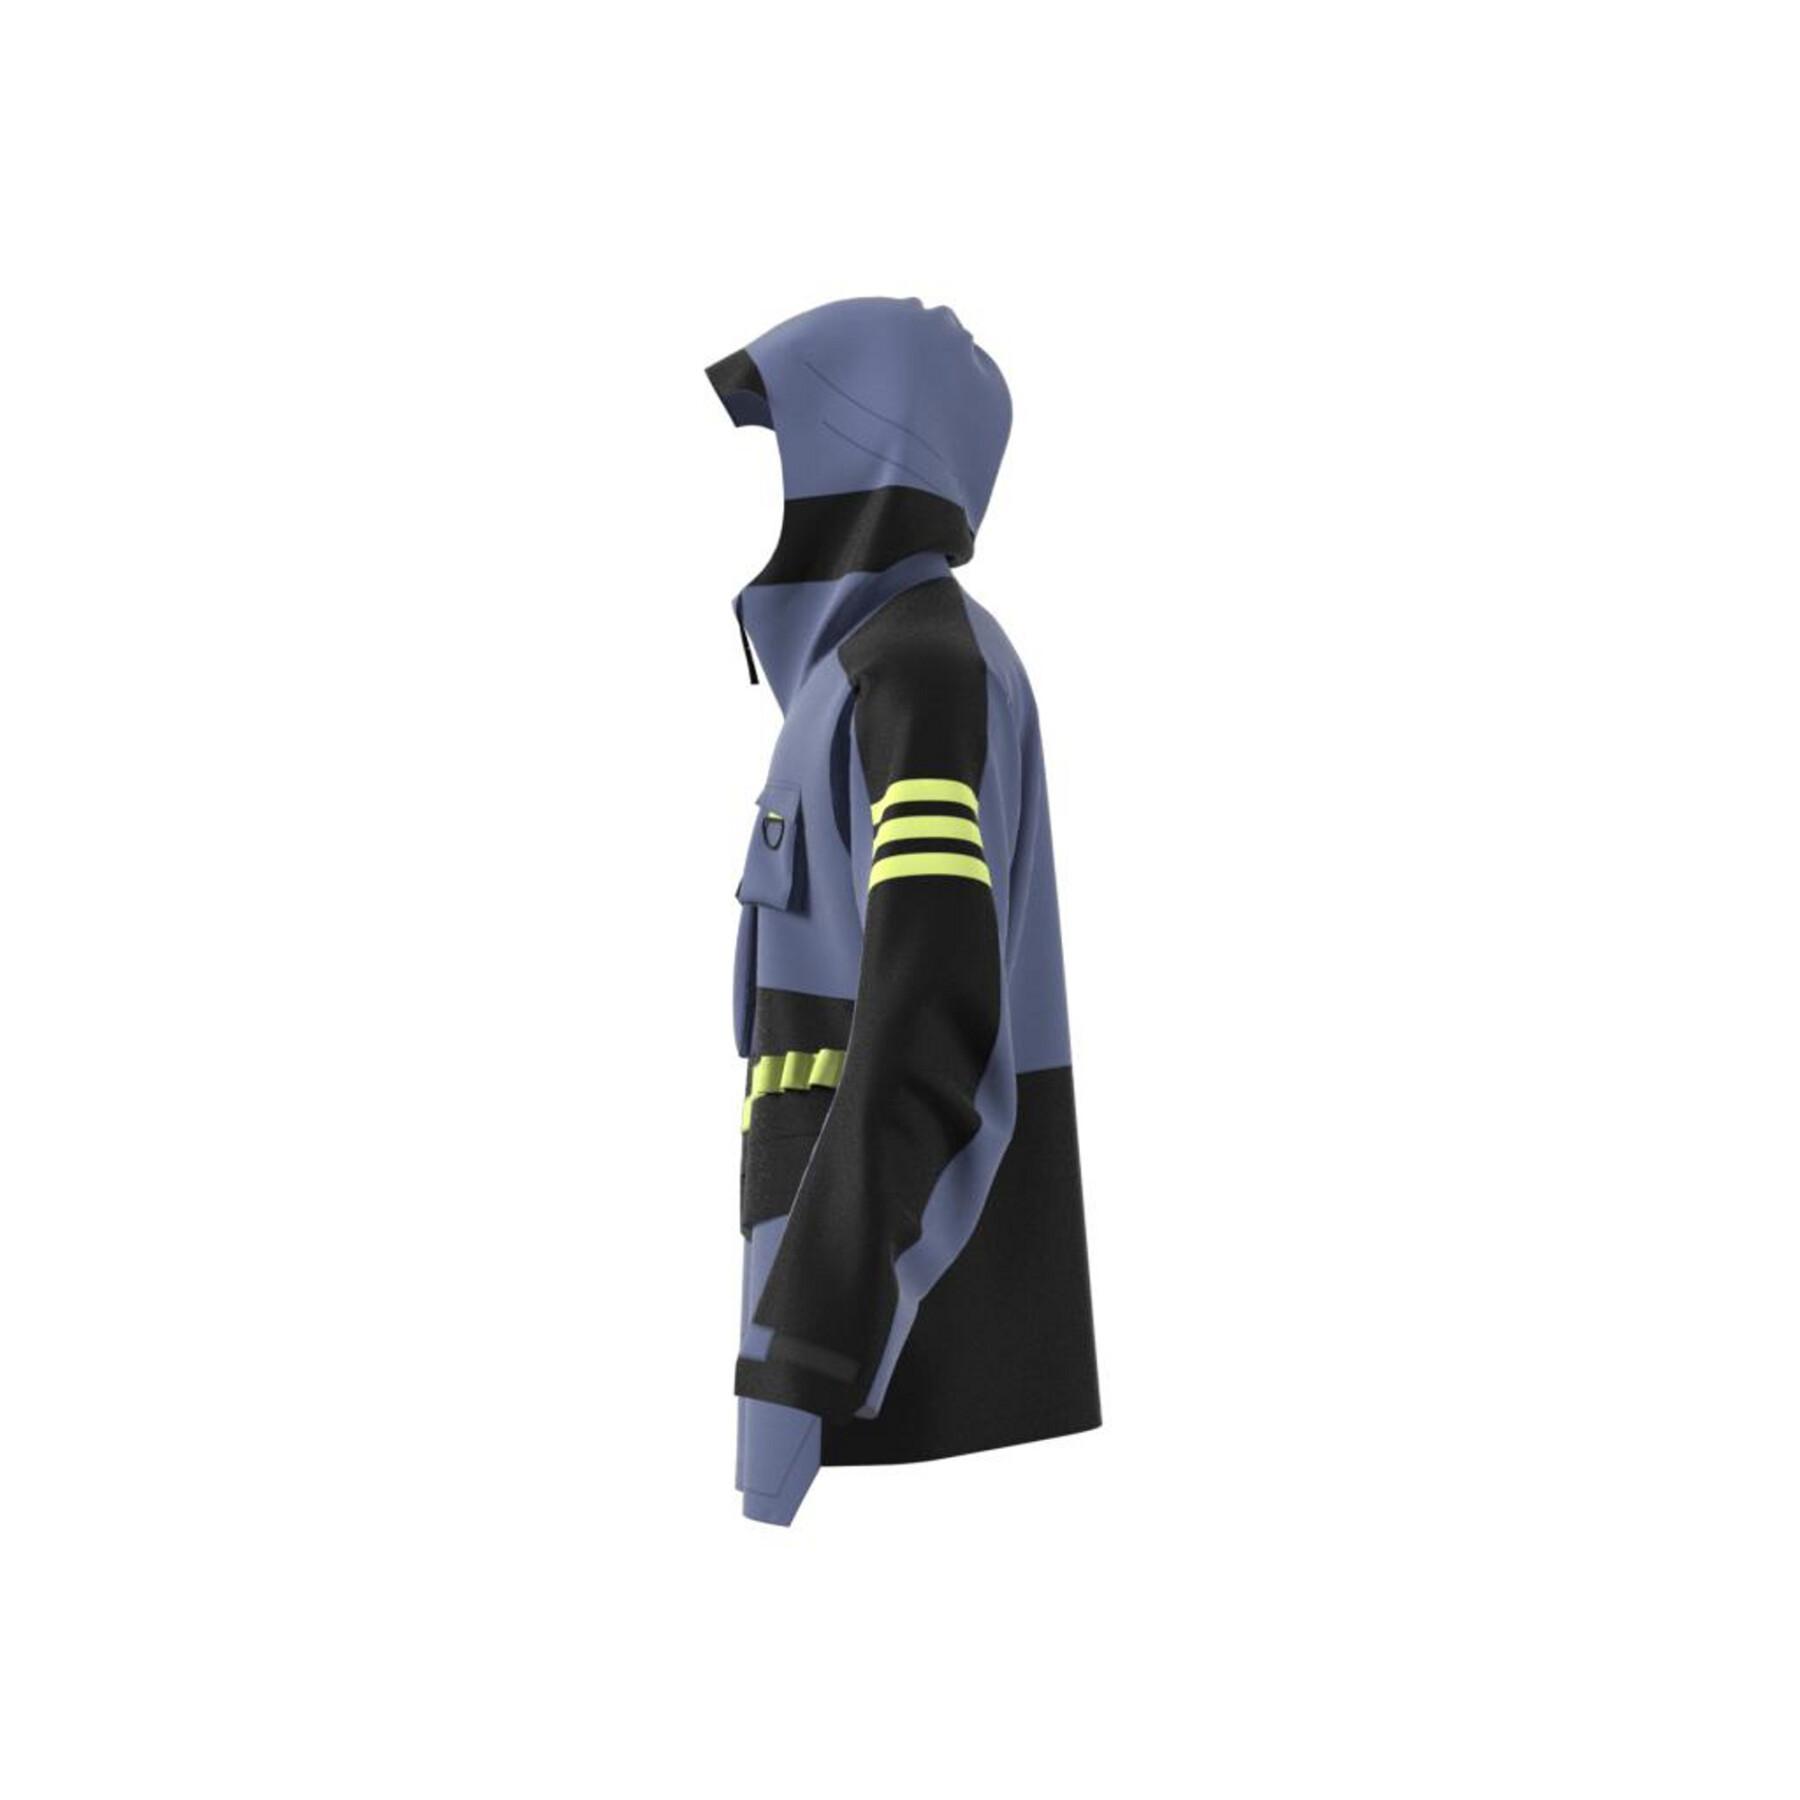 Rain jacket adidas Terrex Xploric